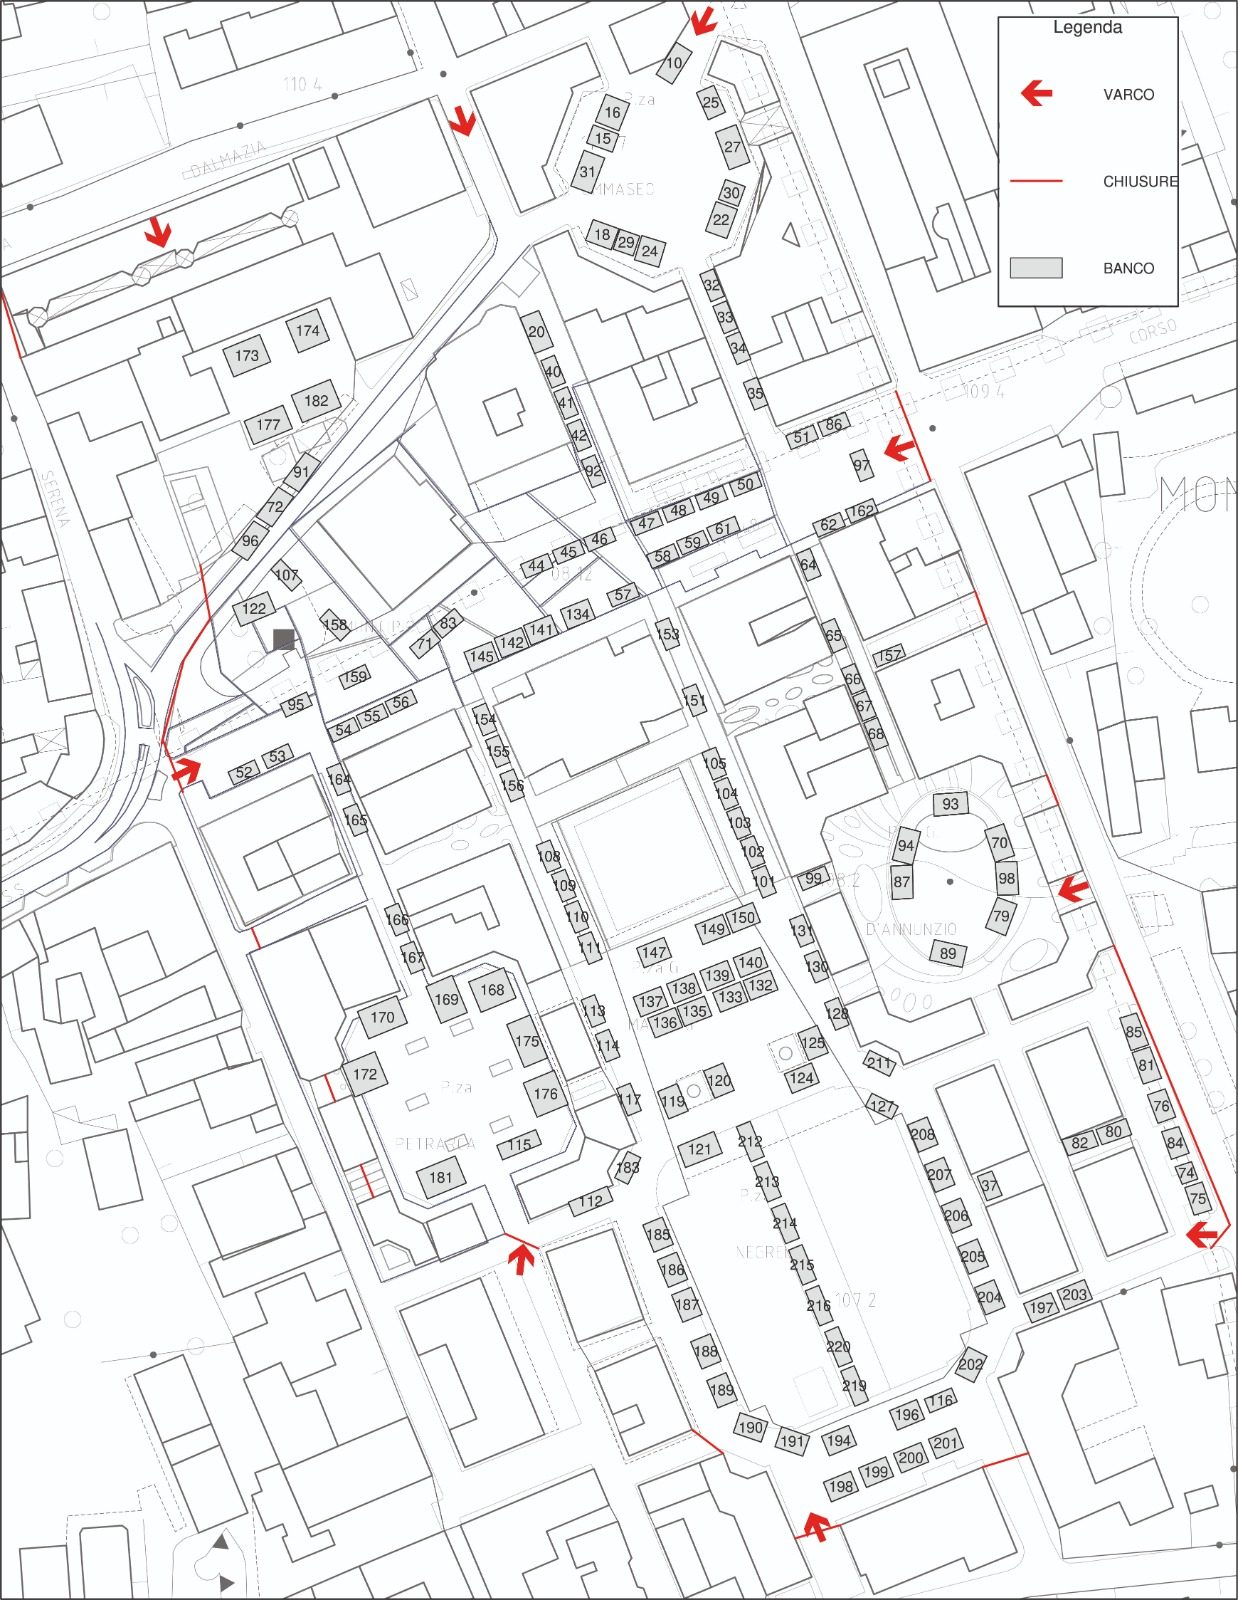 Mercato maggiore Montebelluna, domani si riparte: la mappa con varchi e accessi